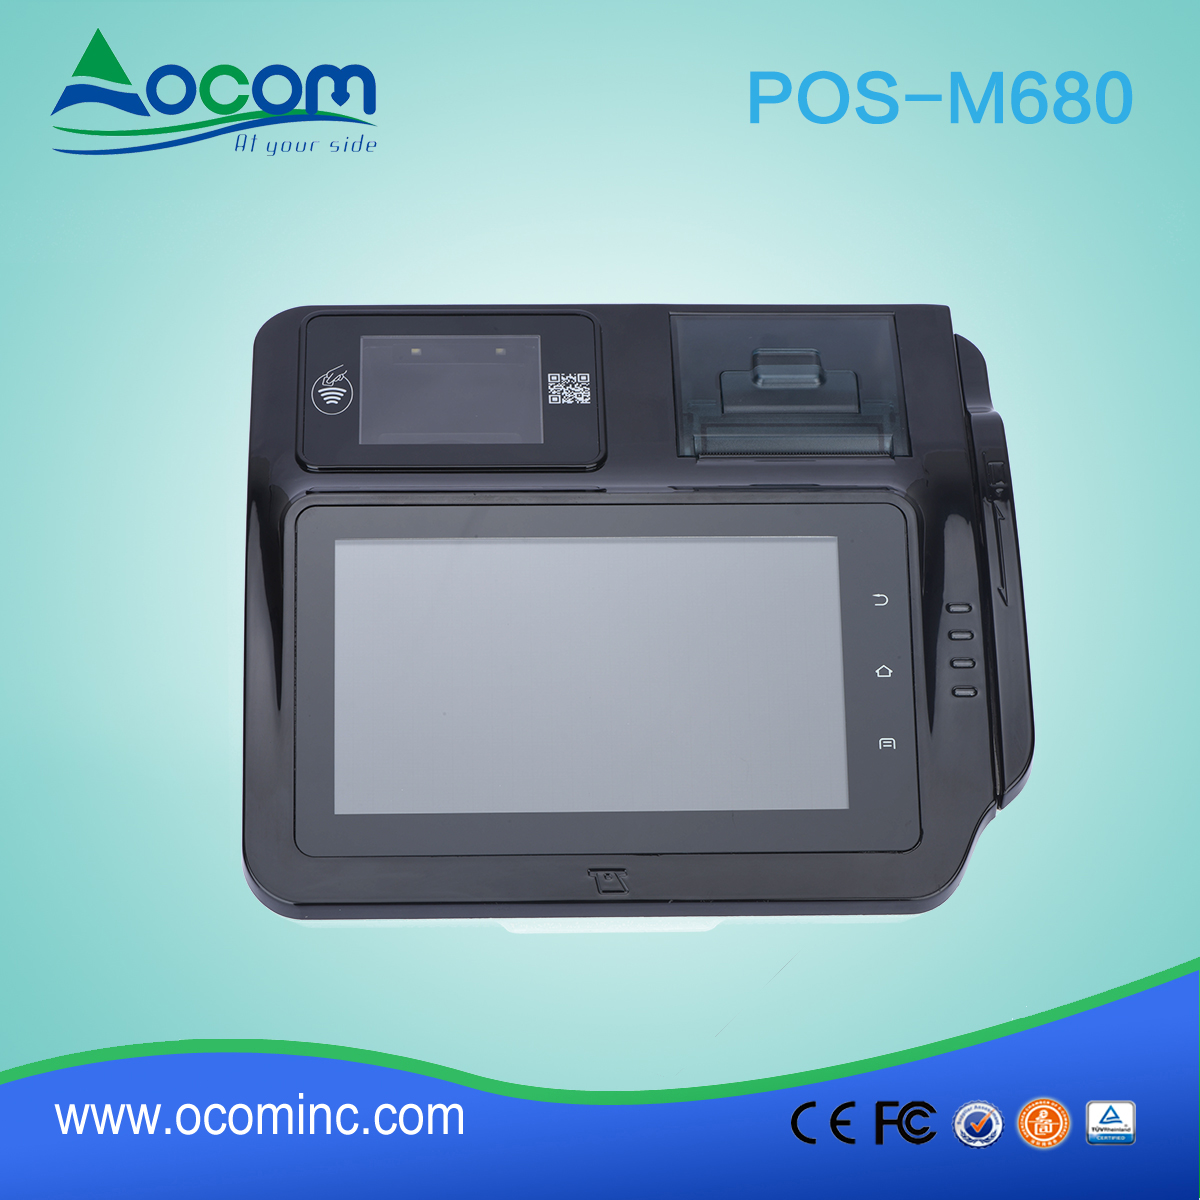 (POS -M680) Terminal POS Android avec imprimante thermique